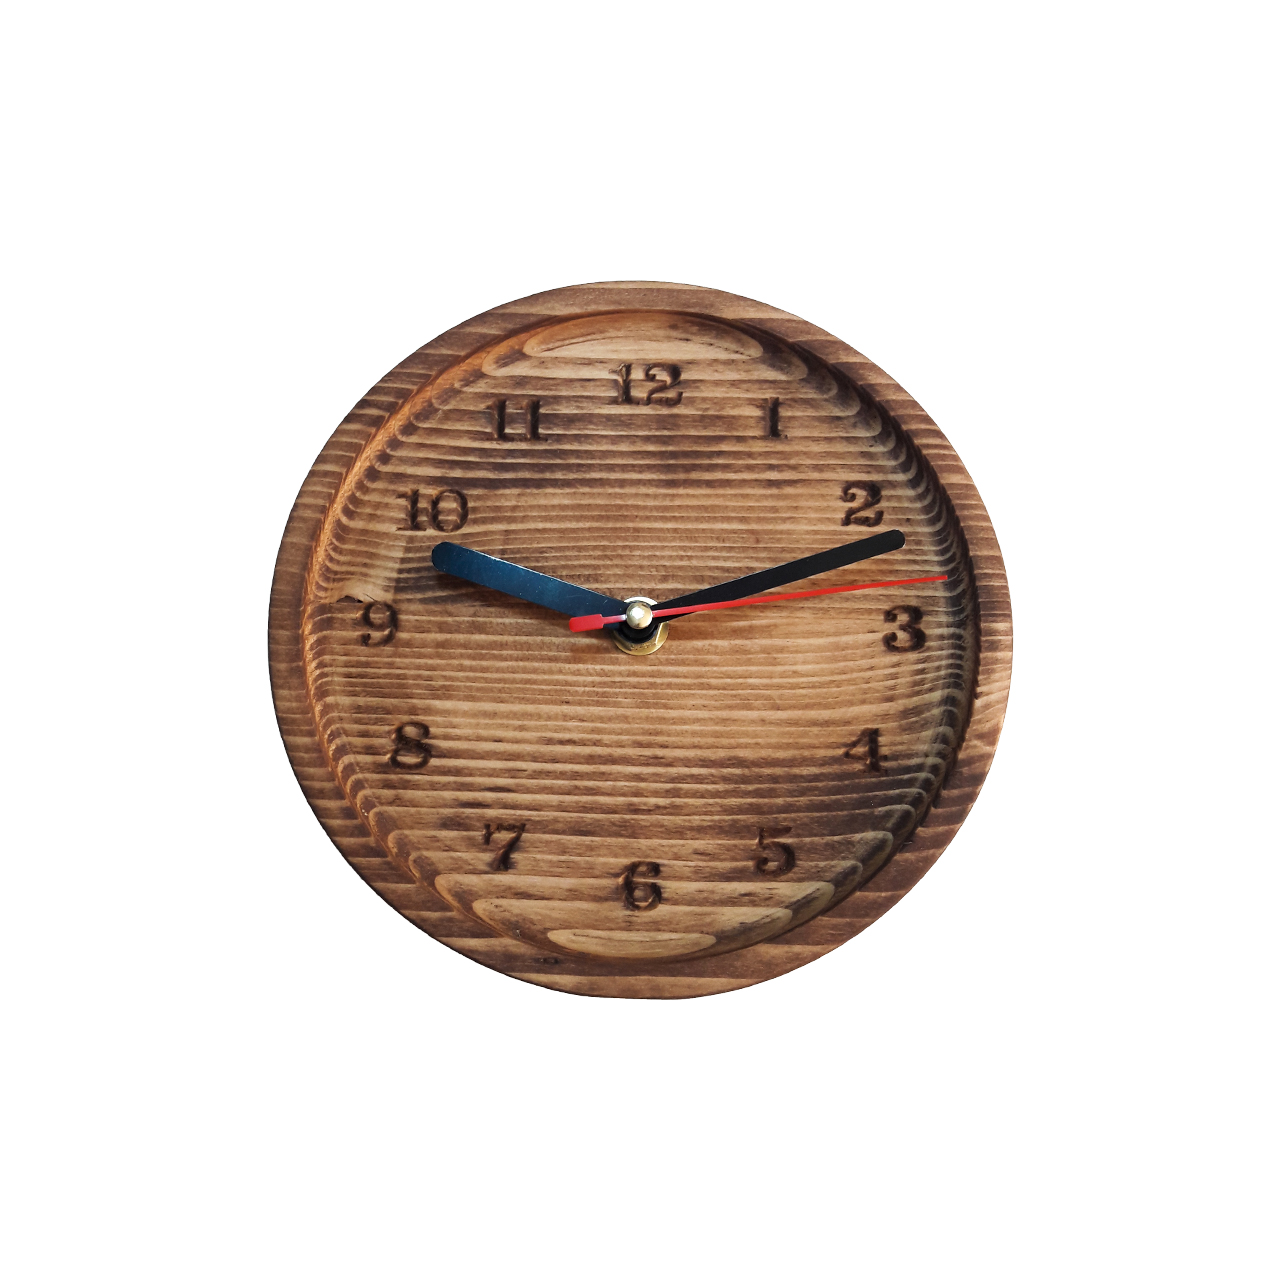 ساعت رومیزی چوبی کوارتز مدل Artin 03